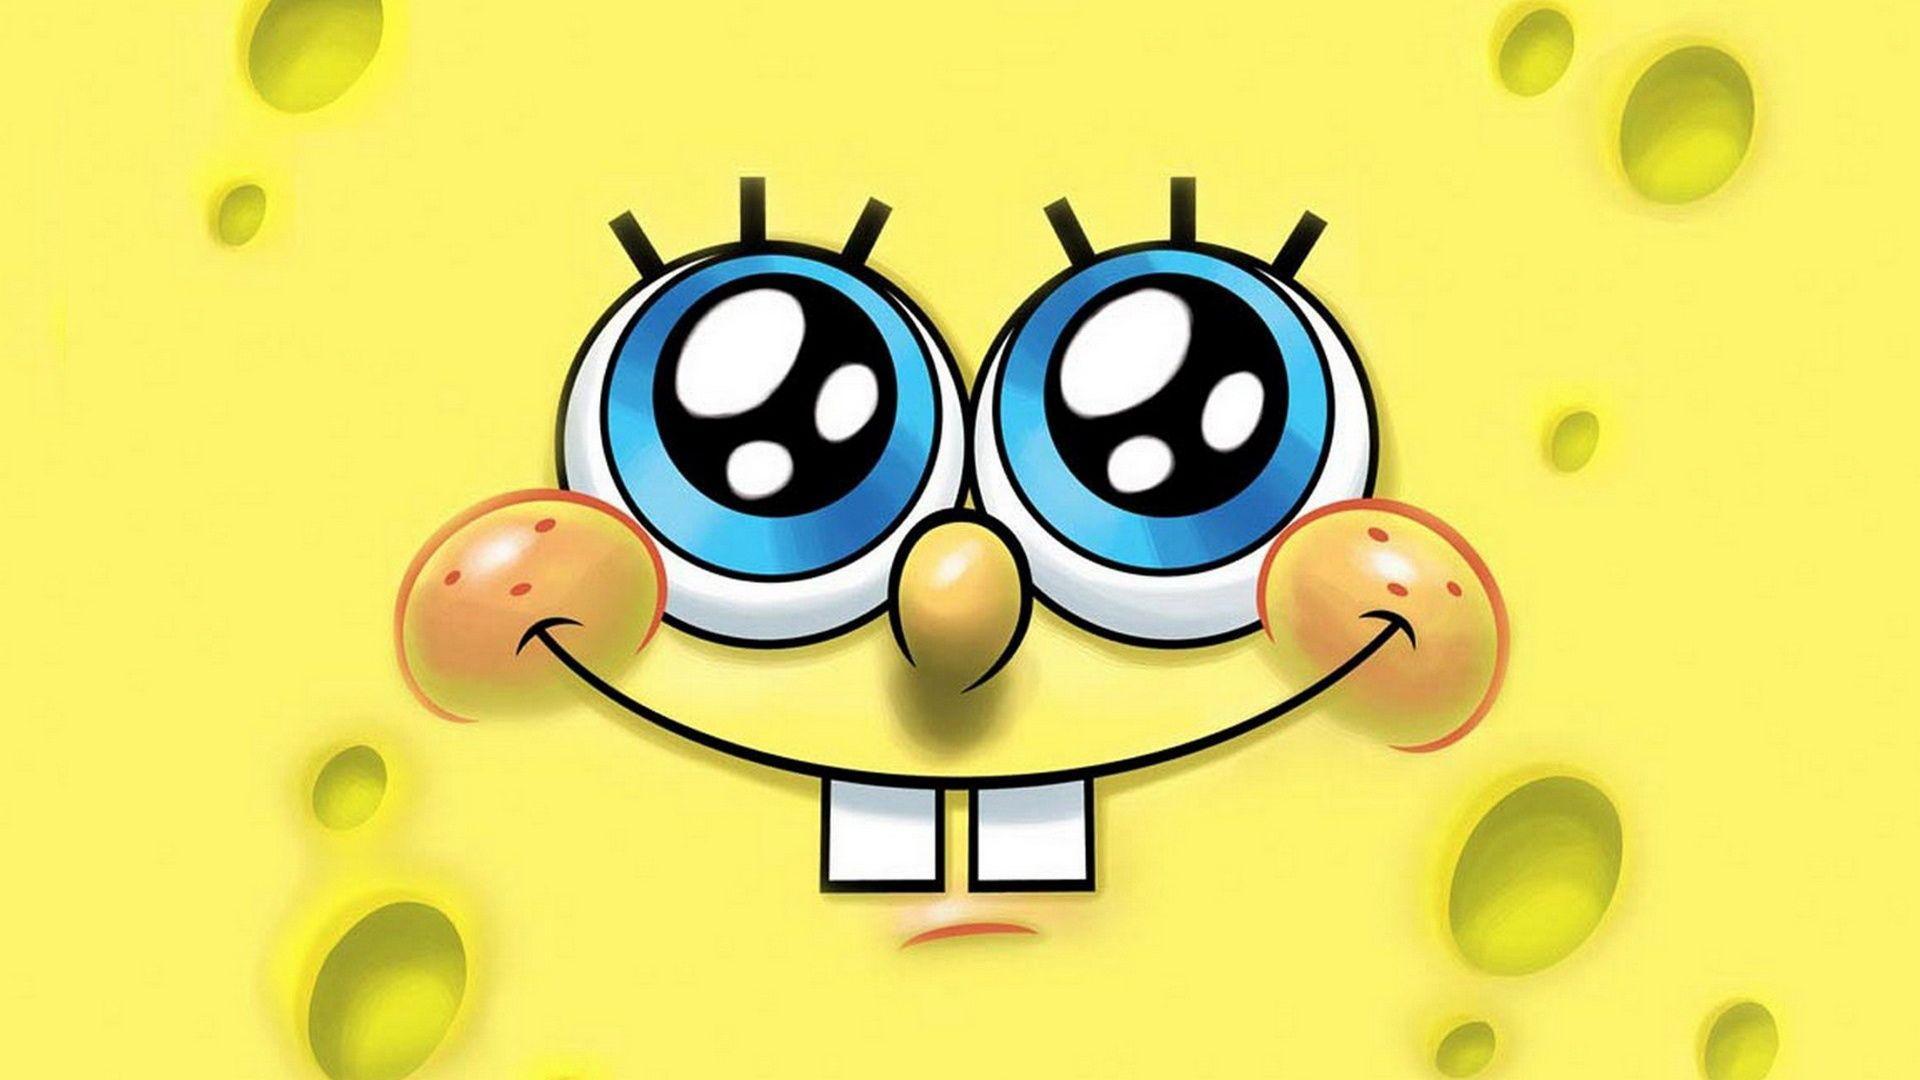 Spongebob Squarepants Face Picture Background (3925) Desktop